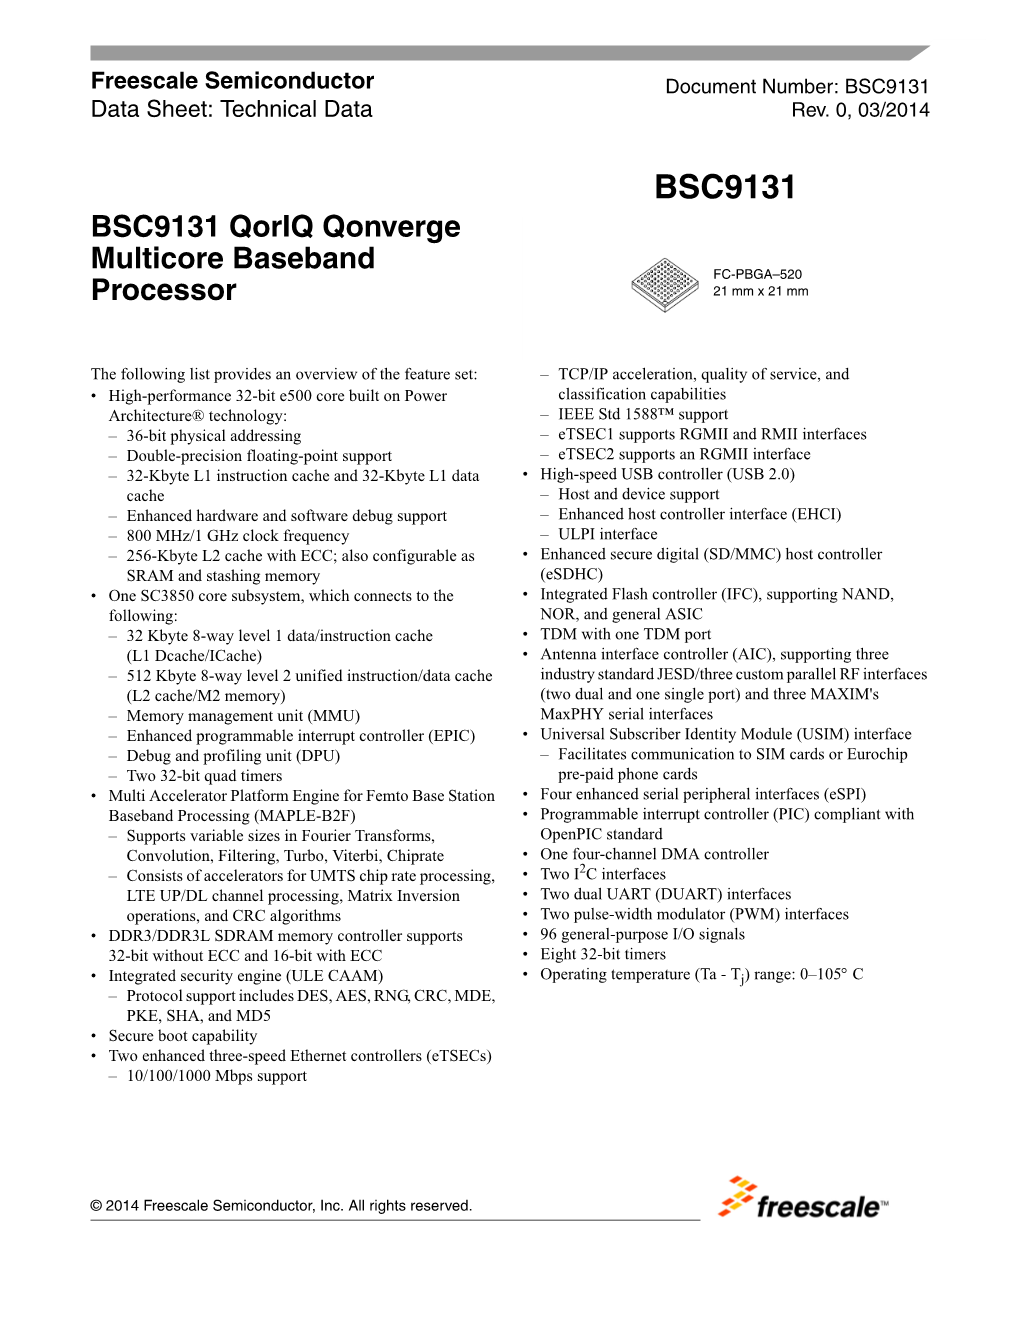 BSC9131, BSC9131 Qoriq Qonverge Multicore Baseband Processor